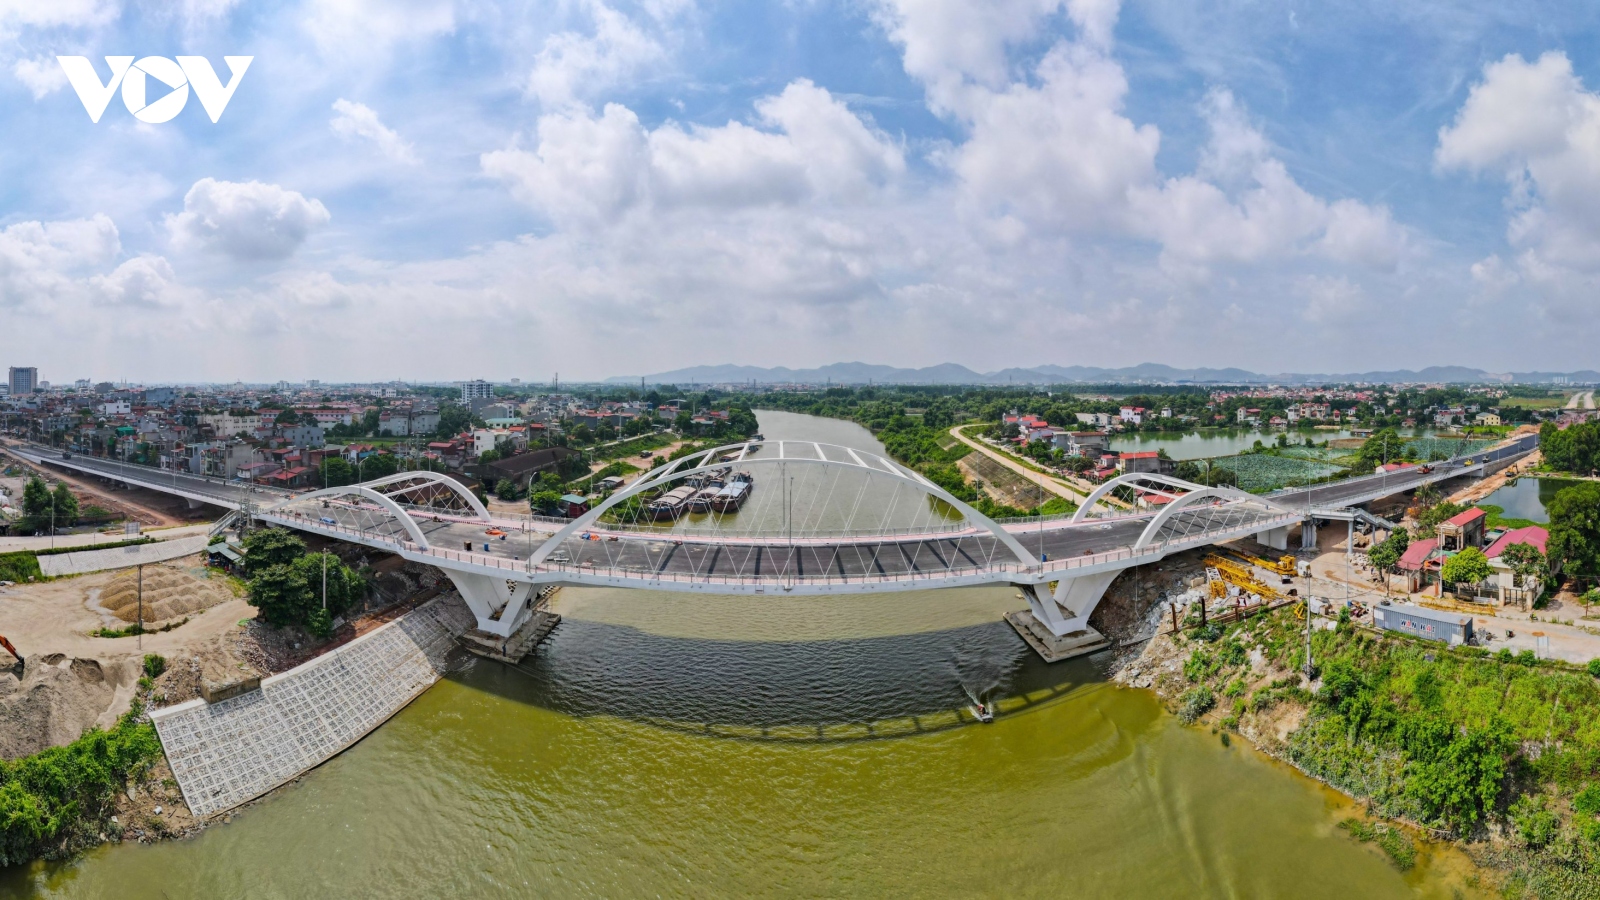 Hình ảnh cầu Á Lữ mở rộng trị giá 300 tỷ đồng vượt sông Thương ở Bắc Giang